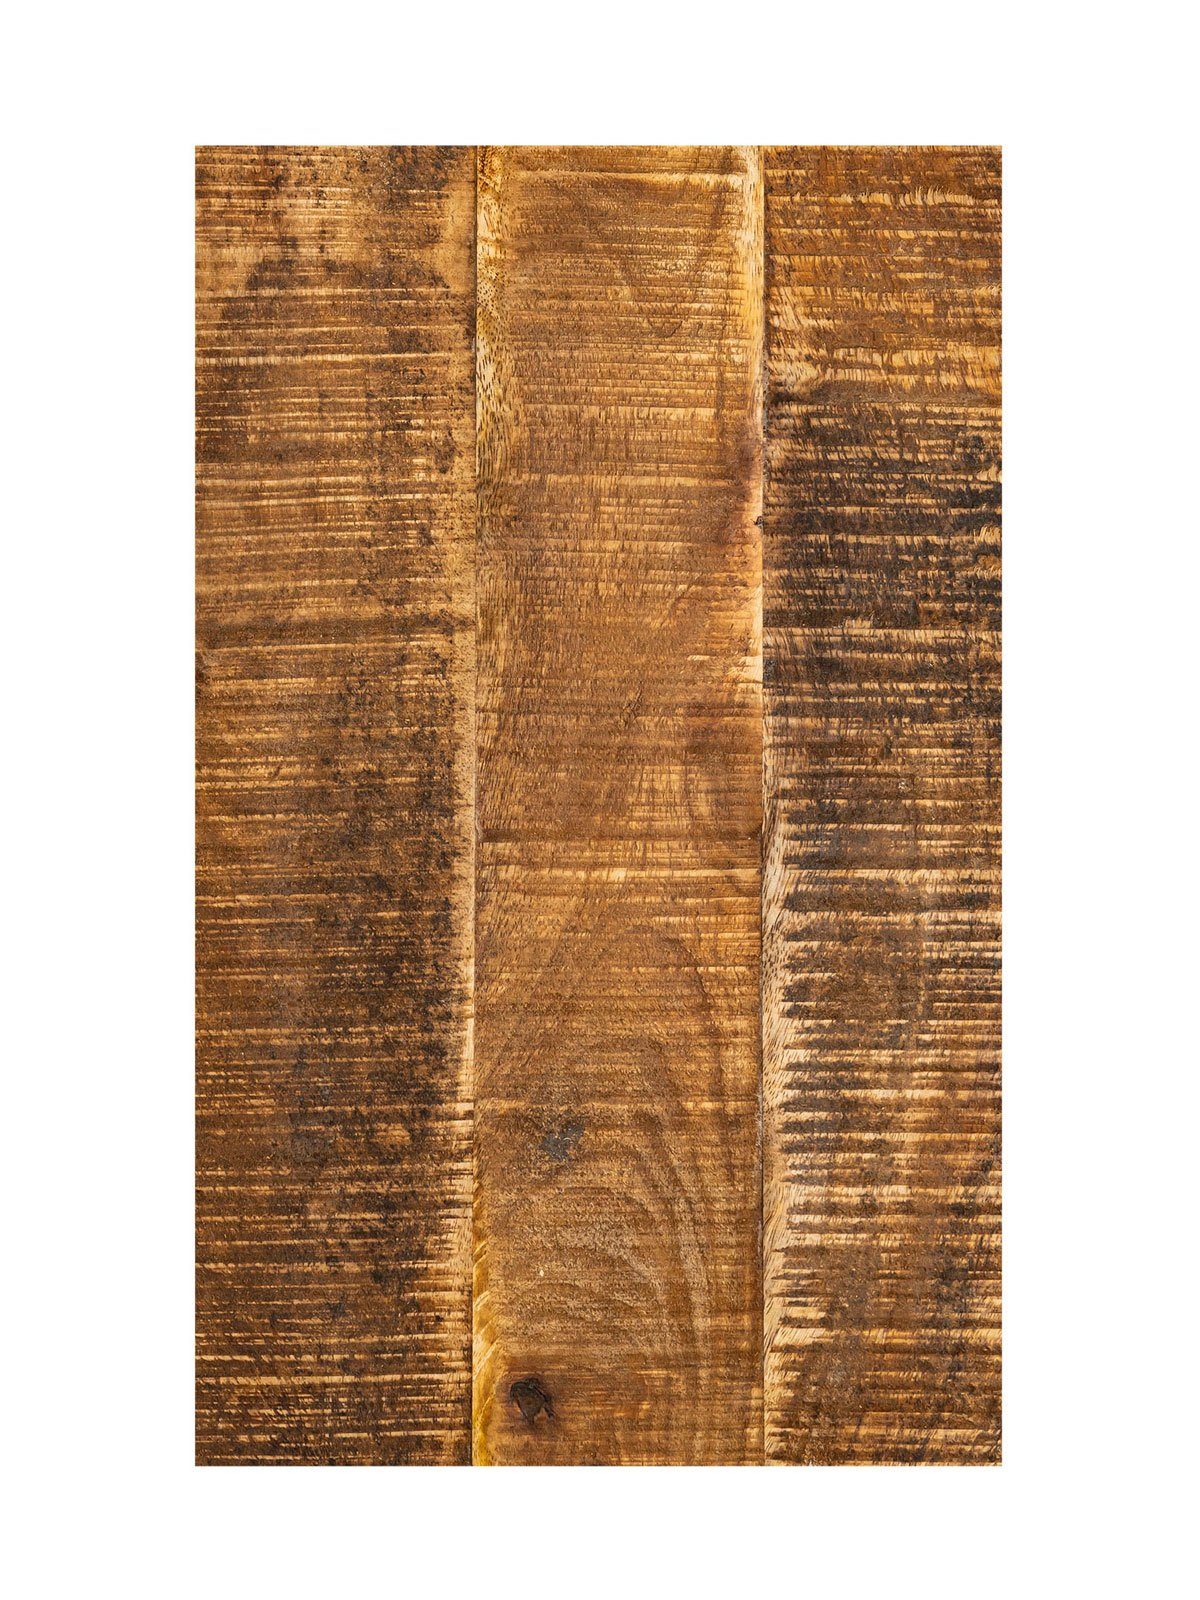 25x60x40cm nachhaltig Casamia Beistelltisch Beistelltisch Laptoptisch Sofatisch Holz C-Tisch